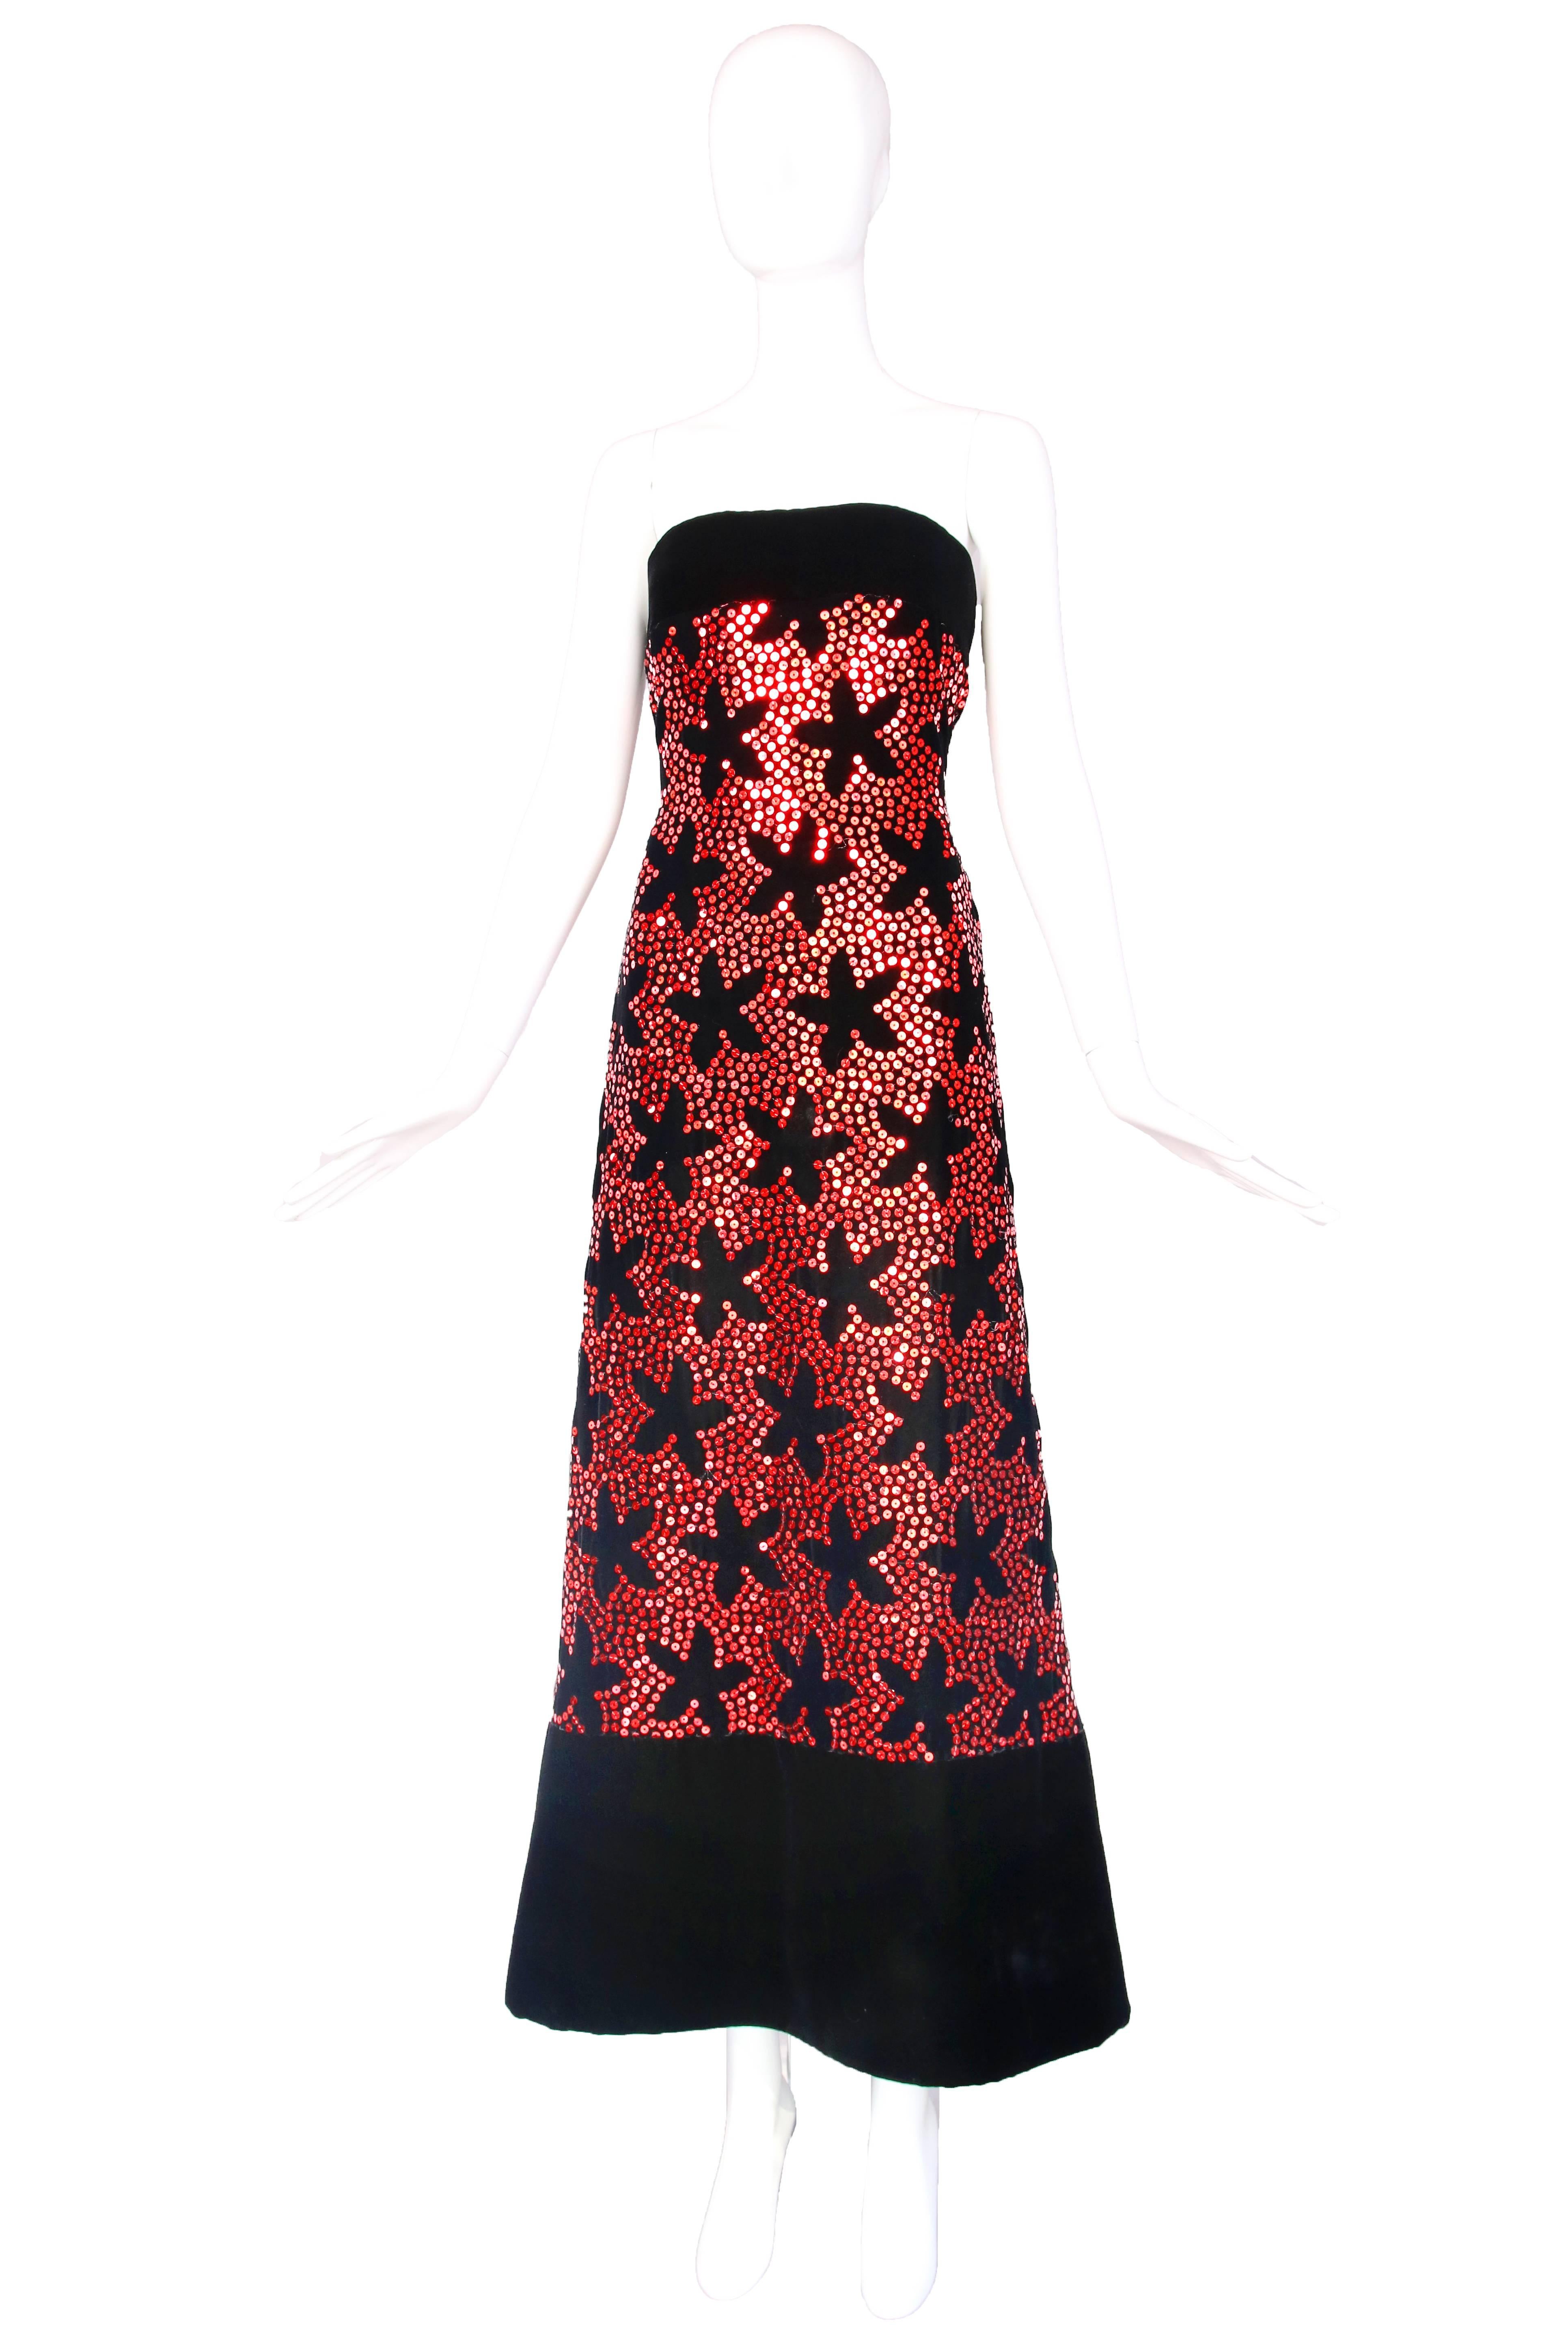 robe de soirée Arnold Scaasi des années 1980, sans bretelles, en velours noir, avec imprimé floral à paillettes rouges sur toute la surface. En excellent état avec une perte mineure de paillettes à la fermeture éclair arrière. Taille 6.
MESURES